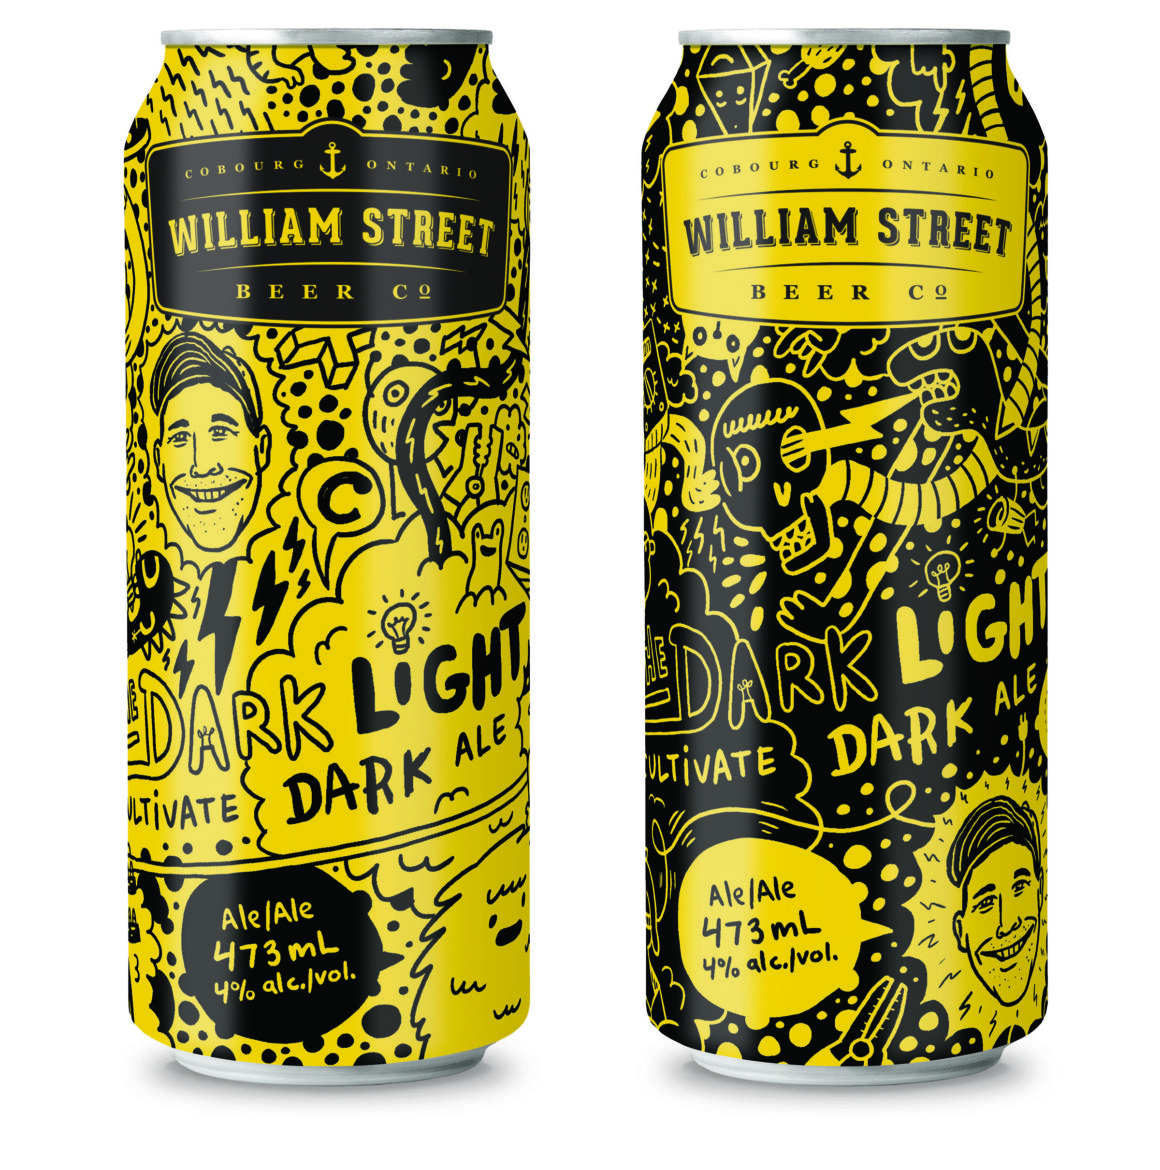 Luke Despatie & The Design Firm | Cultivate Light/Dark ale